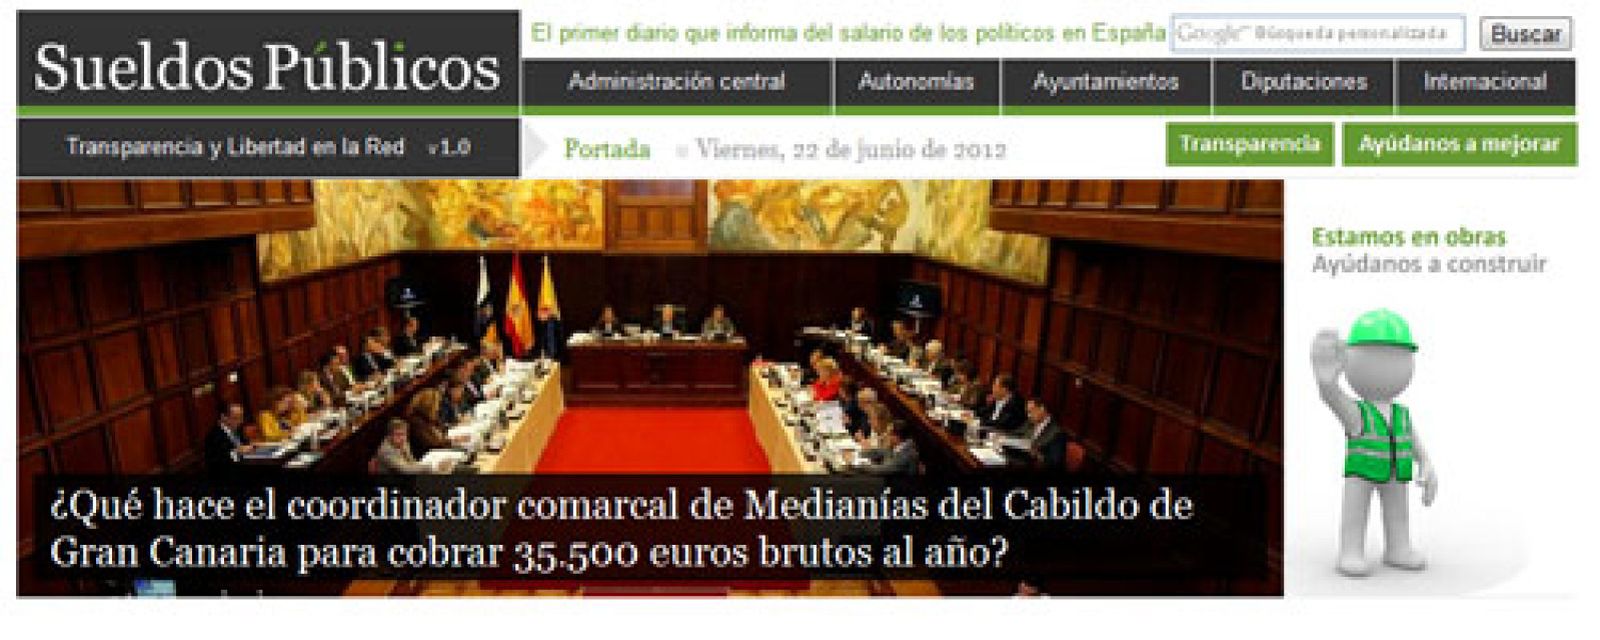 Foto: Sueldospublicos.com, la web para conocer el salario de los políticos